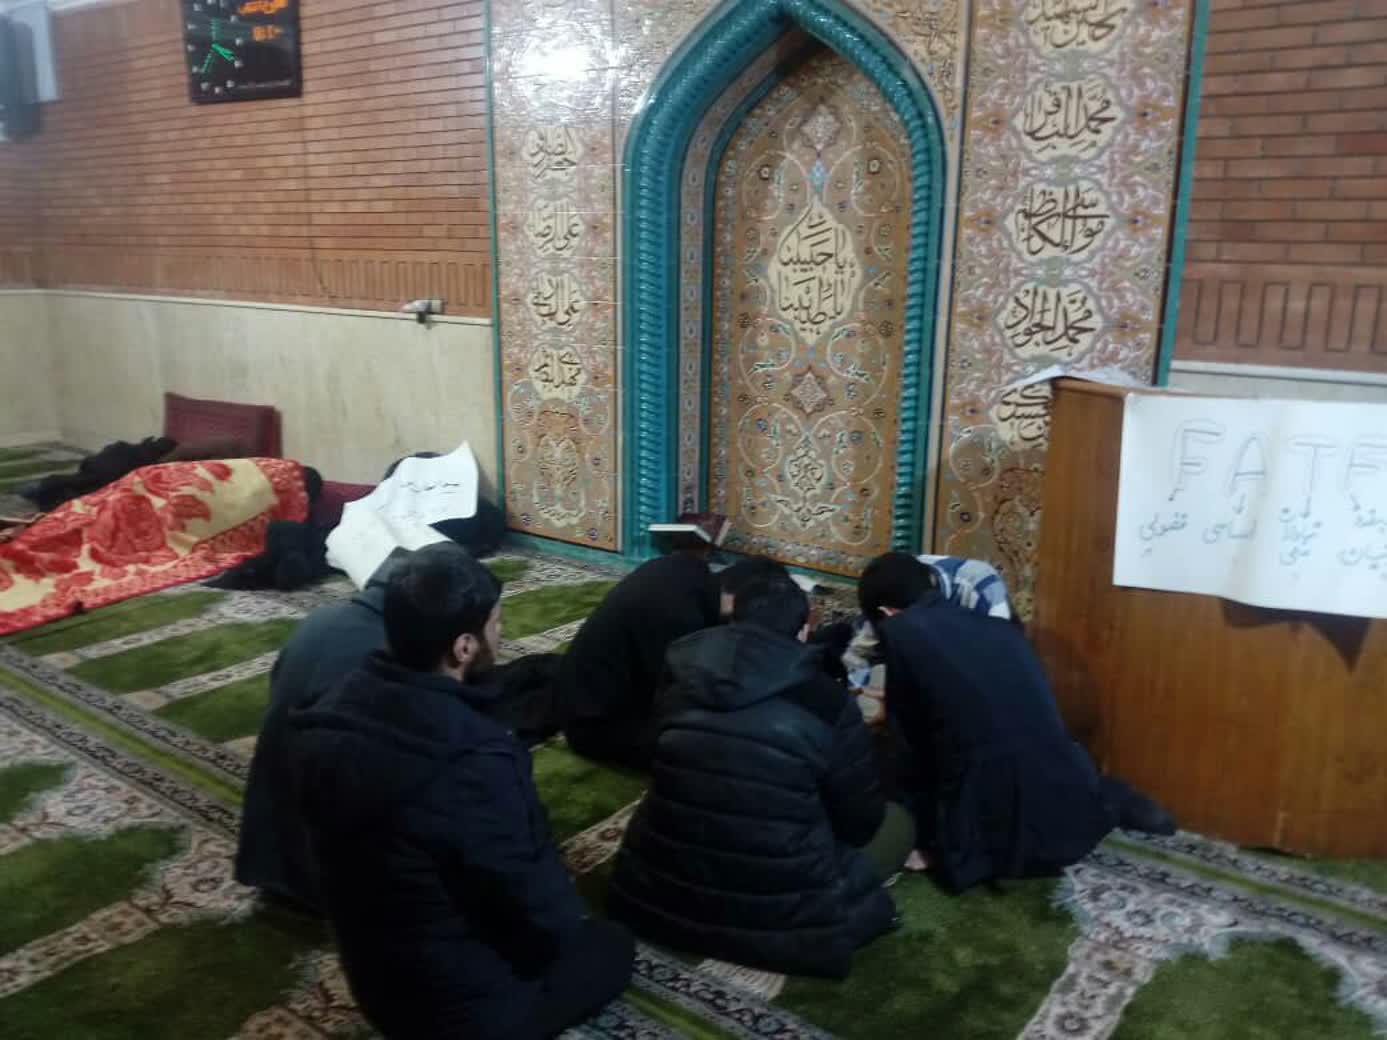 تحصن طلاب و دانشجویان در سراسر کشور/ تحصن تهرانی ها در مسجد لولاگر + عکس